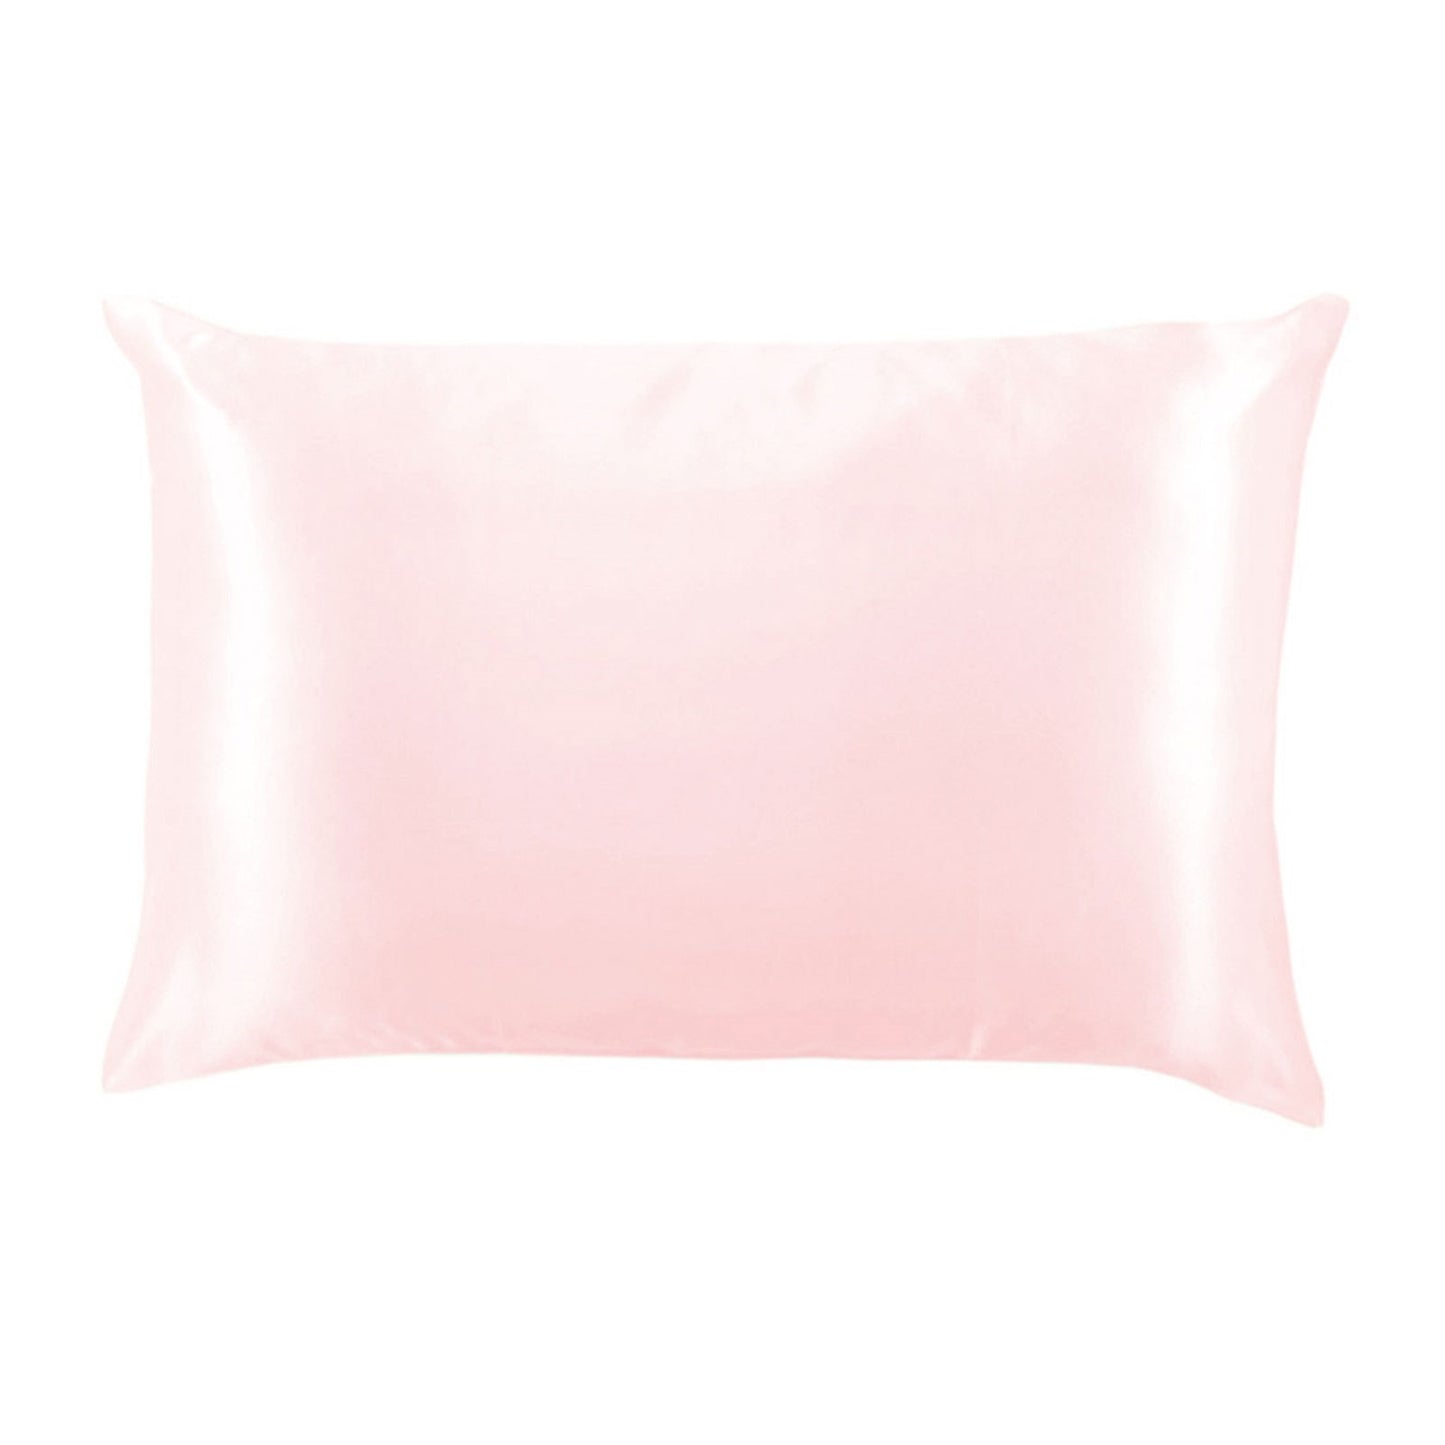 pink pillow case